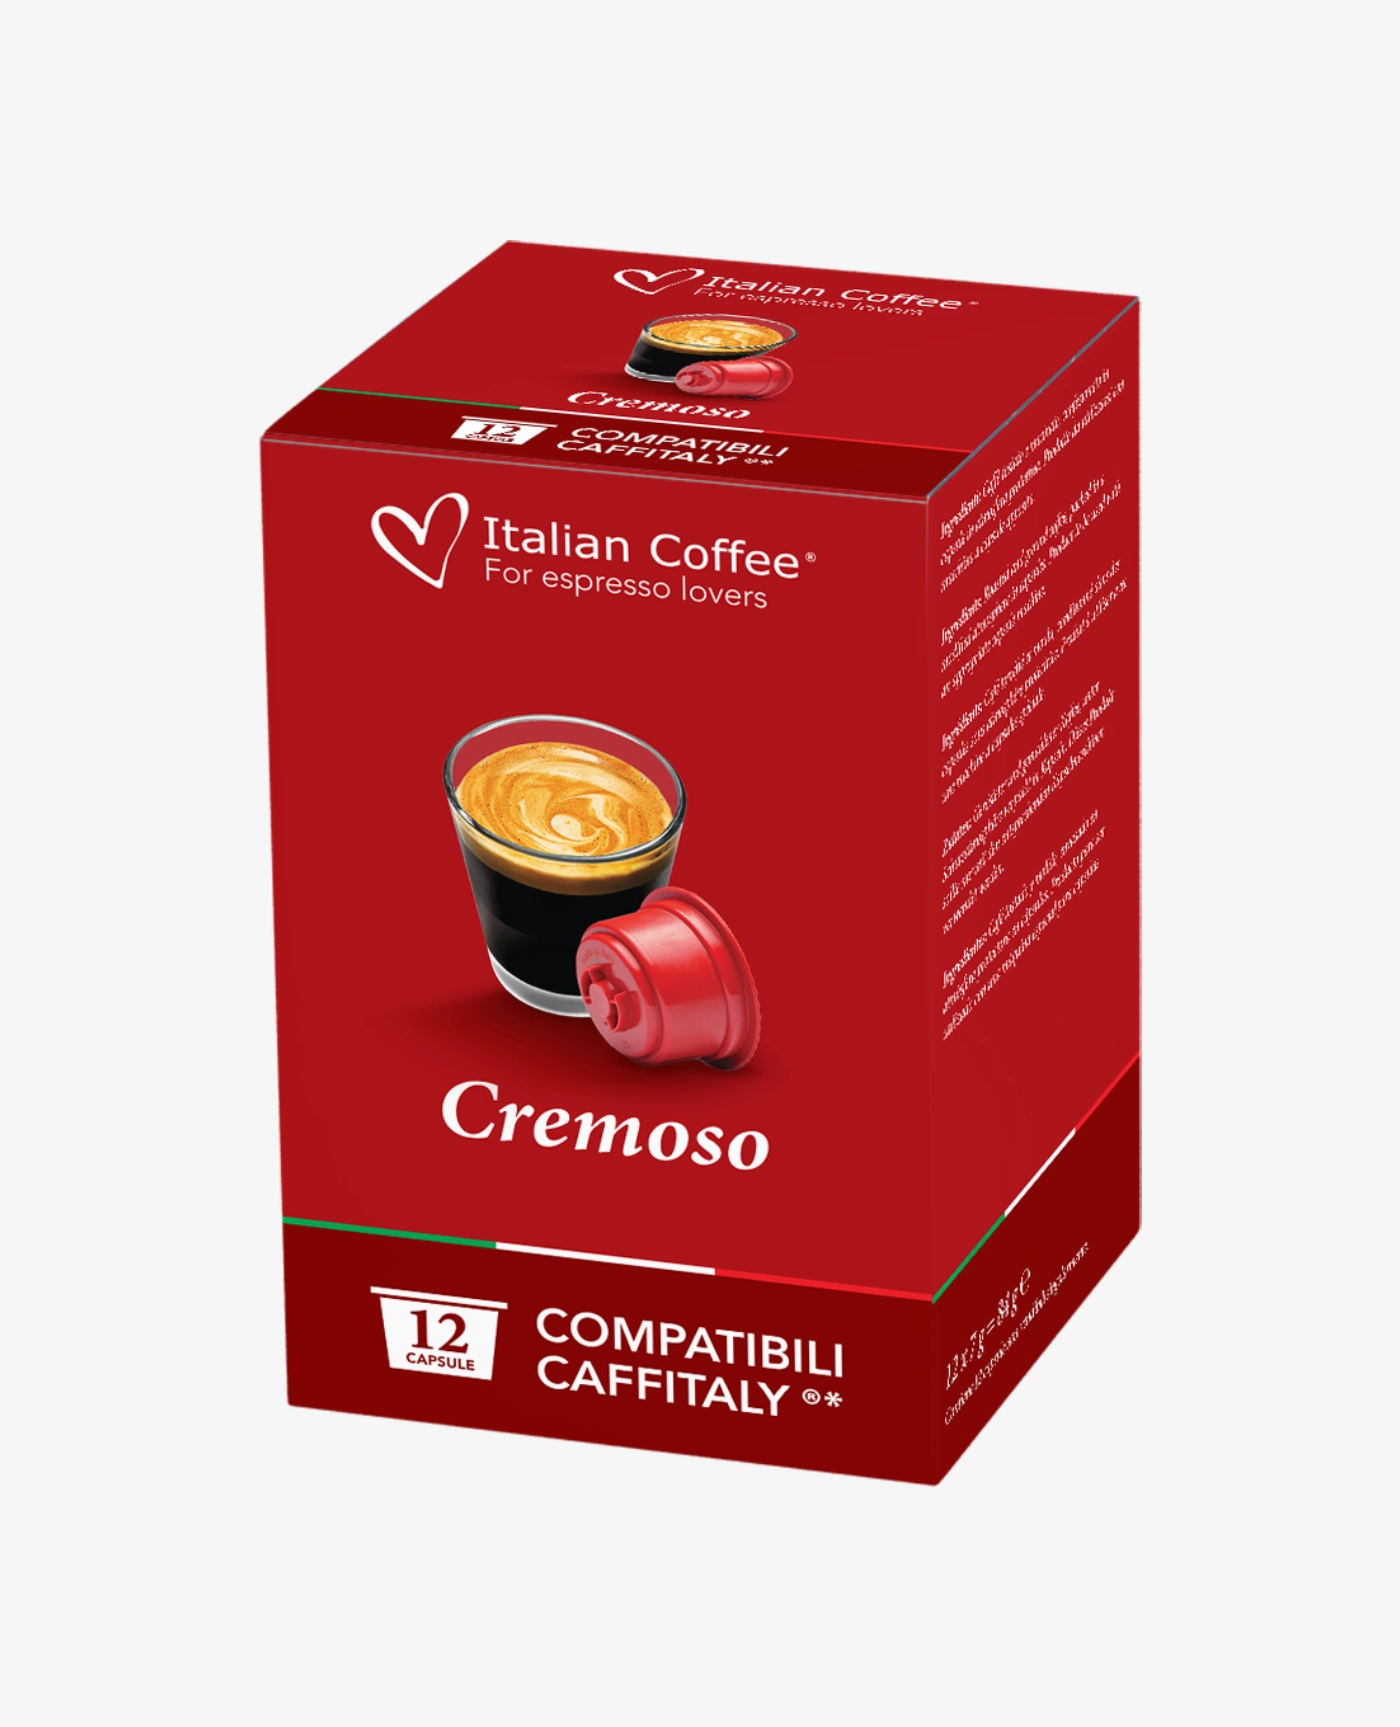 Italian Coffee Cremoso Kapsułki Caffissimo - Kapsułki Caffitaly